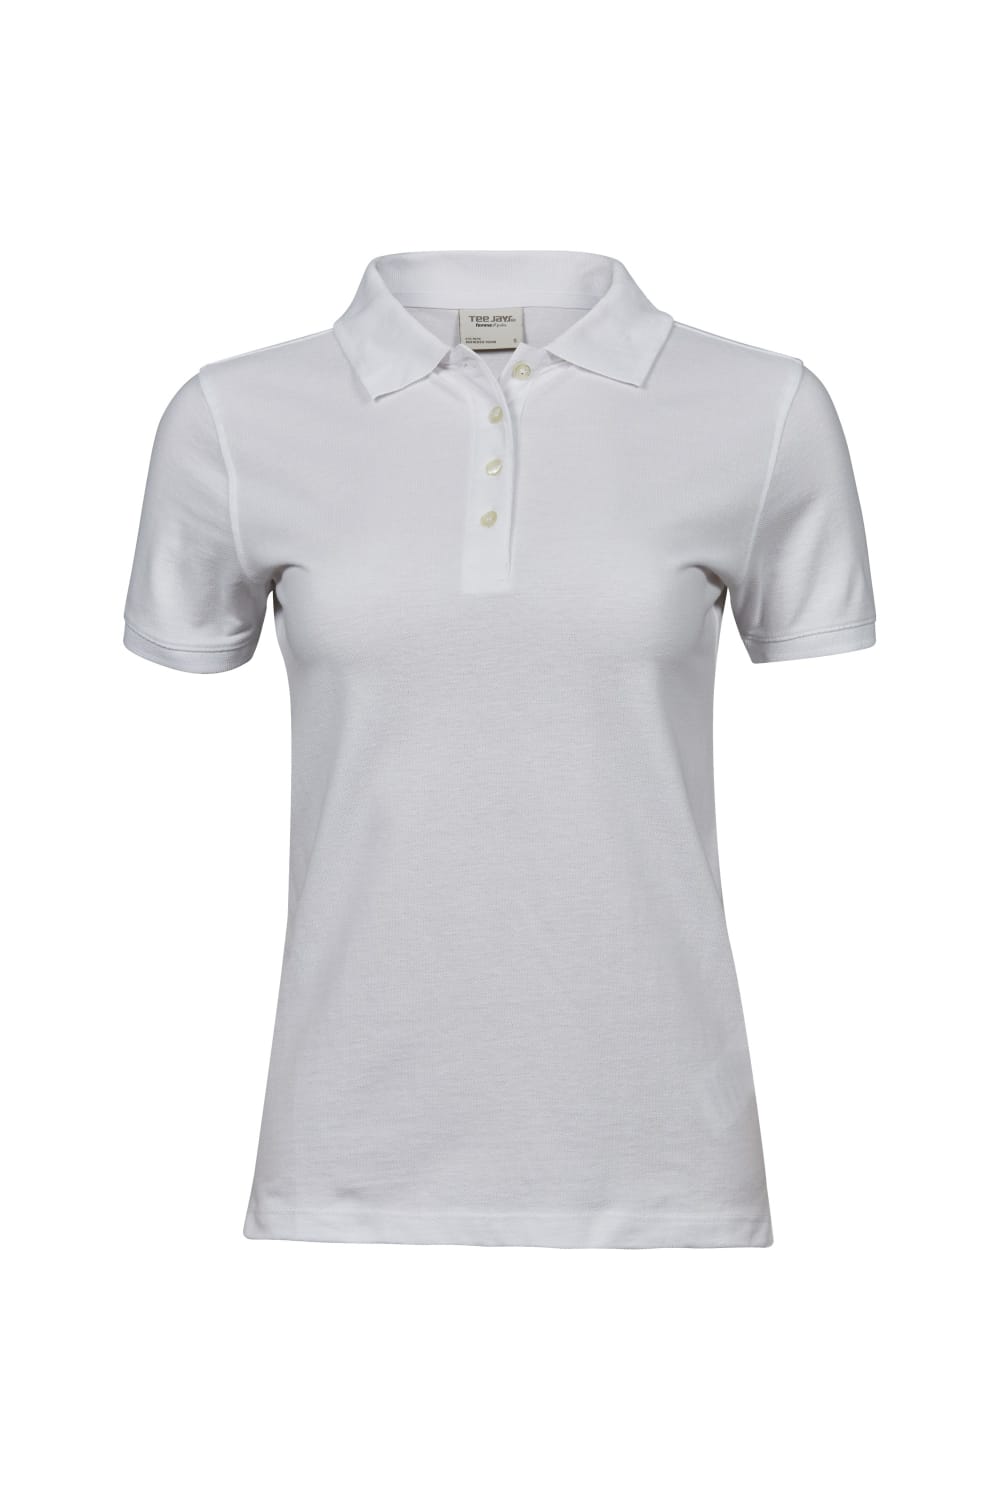 Tee Jays Womens/Ladies Heavy Cotton Pique Polo Shirt (White)